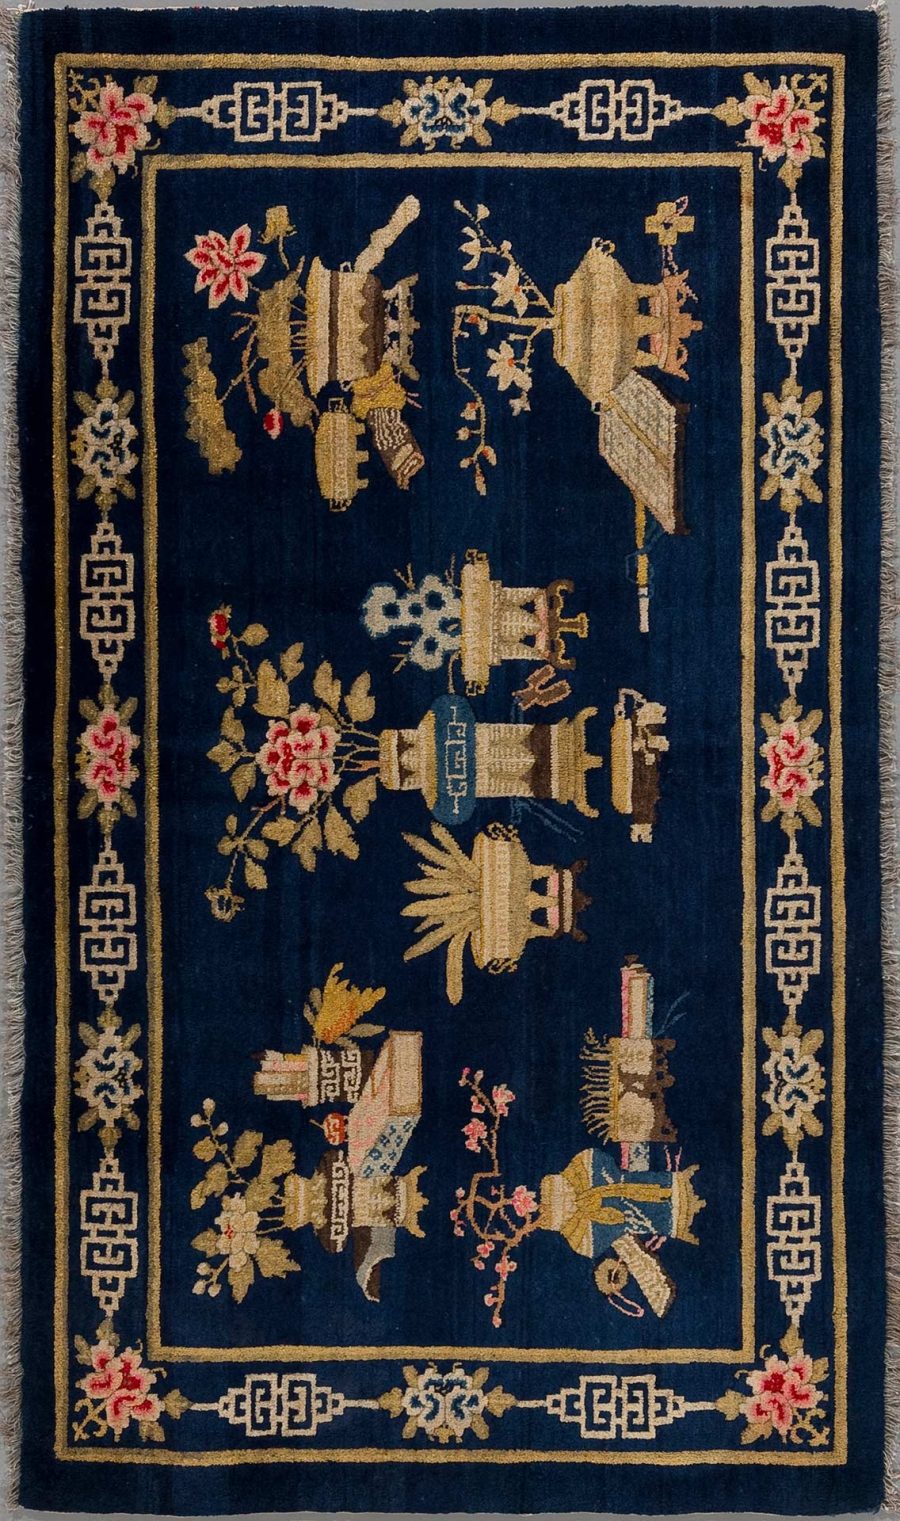 Antiker Teppich mit dunkelblauem Grund und detaillierter Stickerei in Gold und mehrfarbigen Akzenten, darstellend traditionelle asiatische Motive, darunter Vögel, Vasen und Blumen, umrandet von einem geometrischen Mäander-Muster.